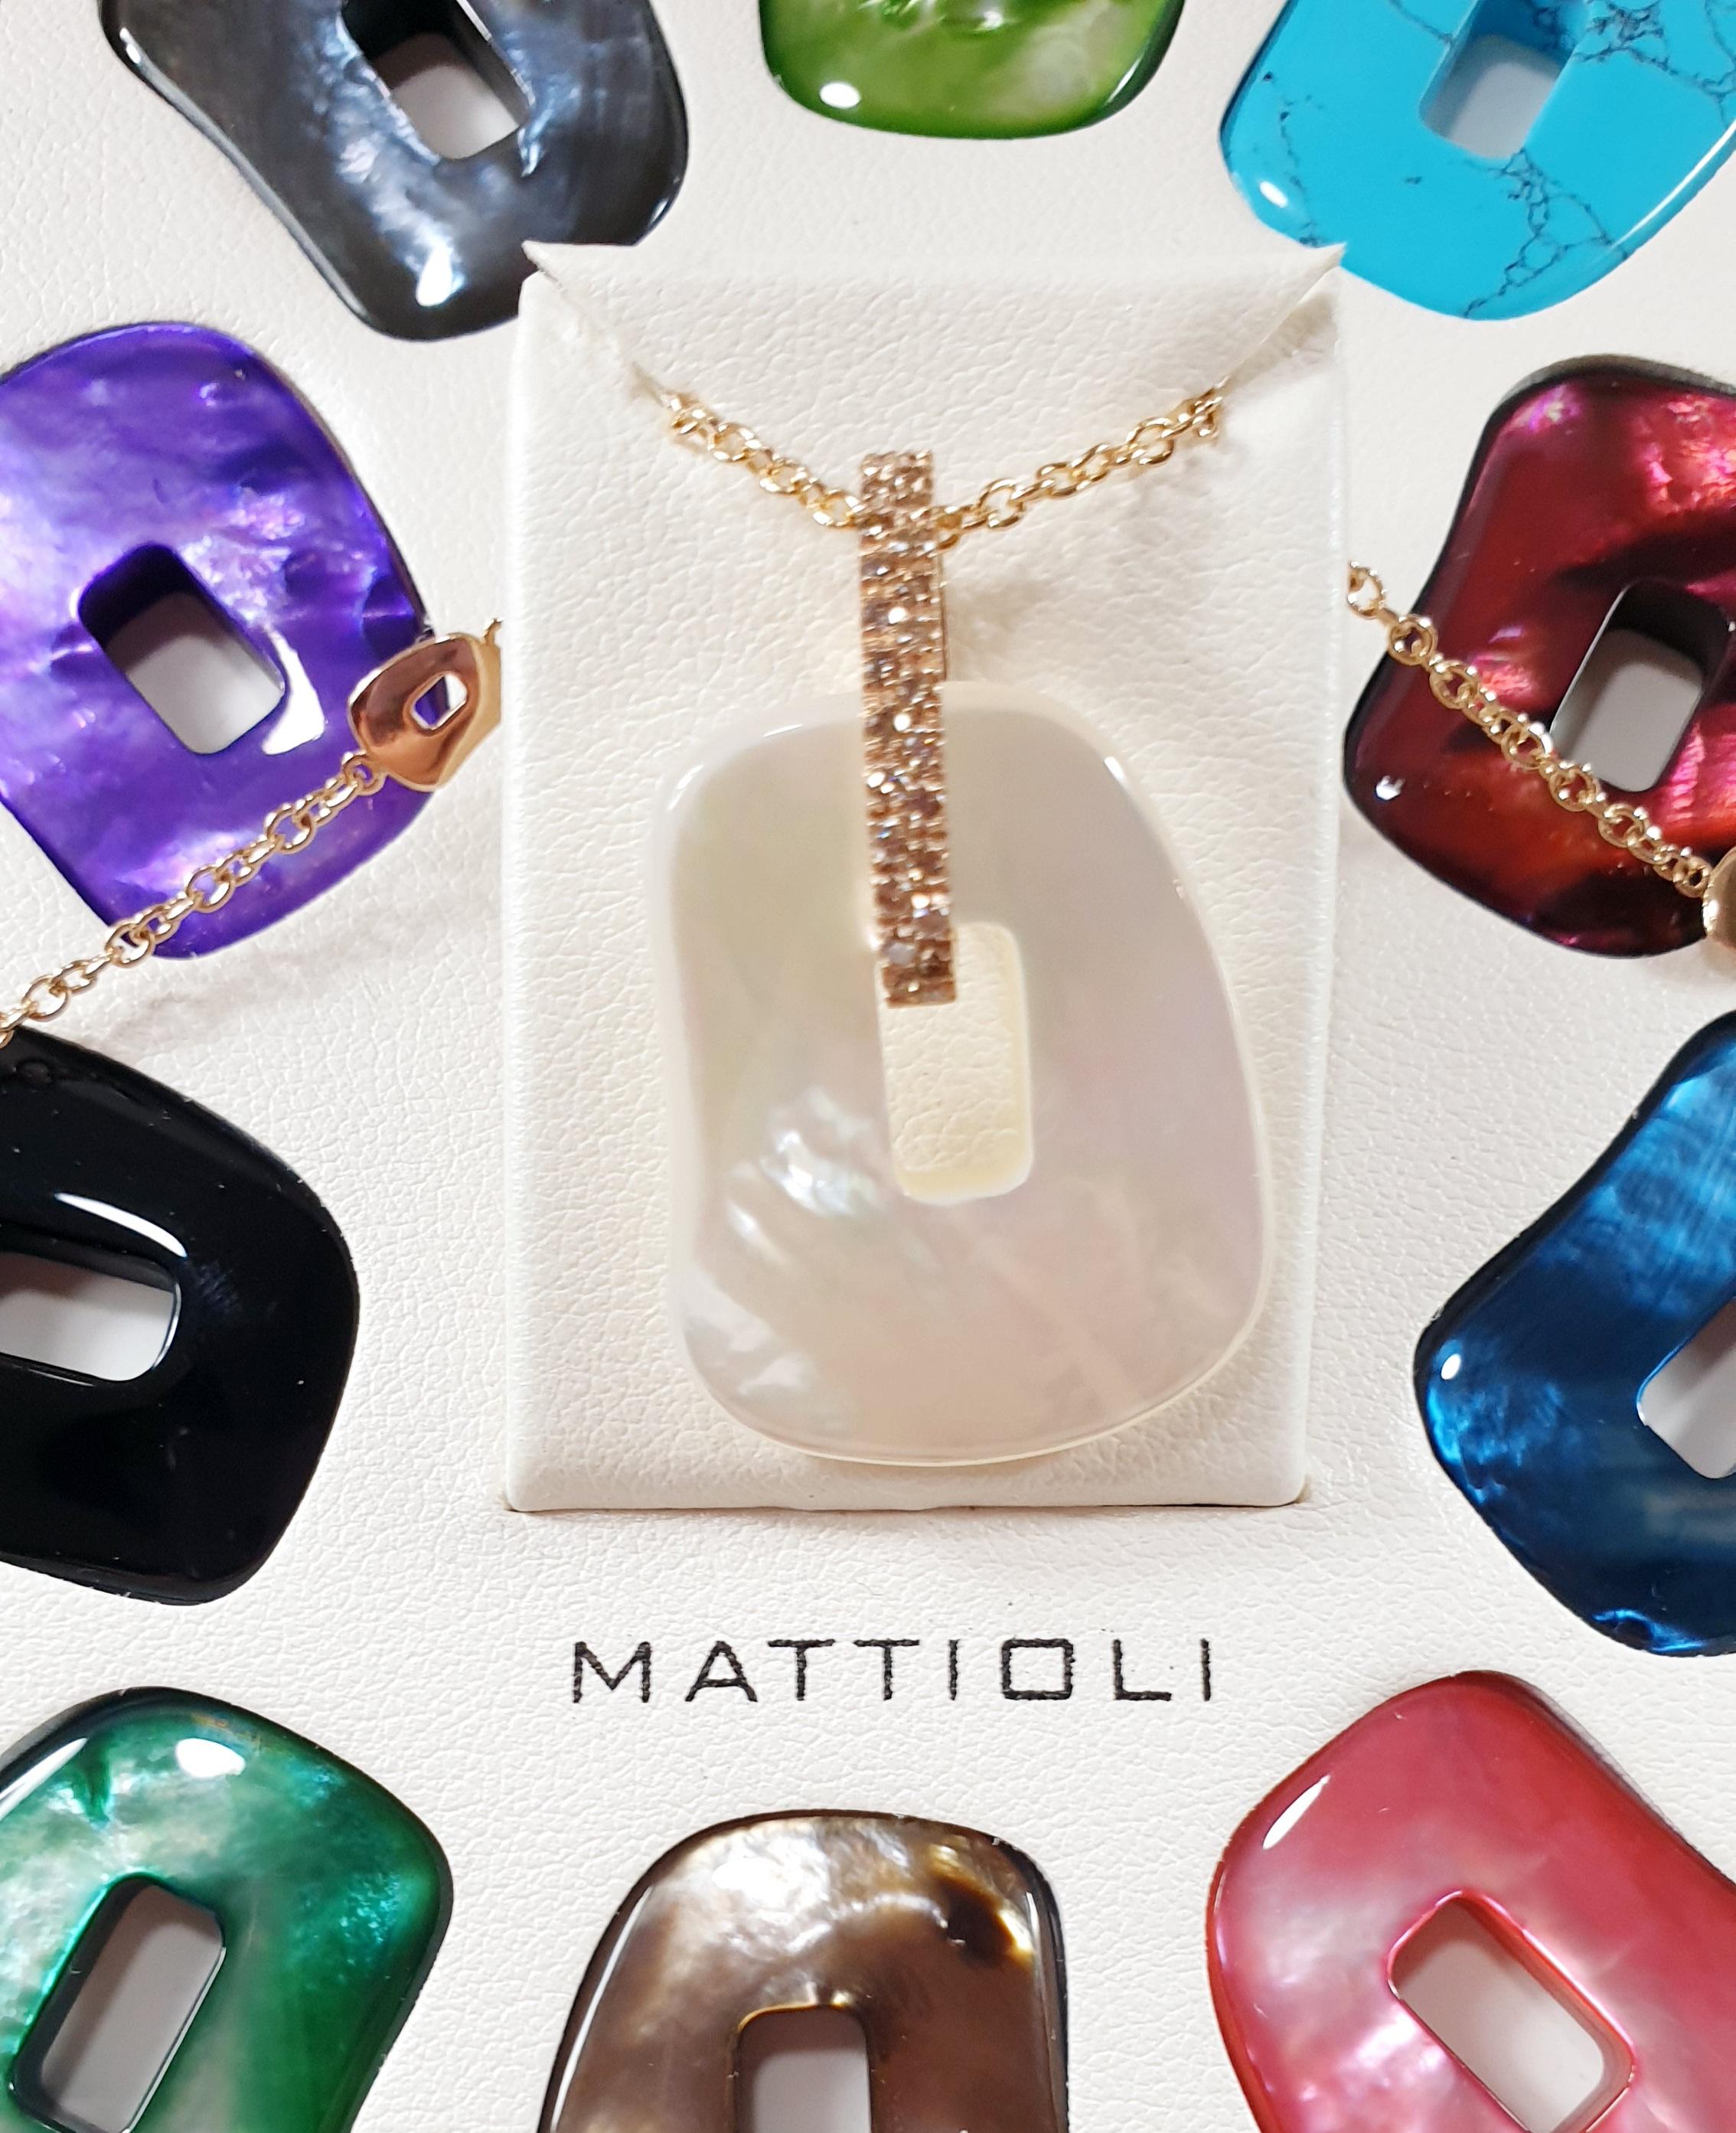 Contemporary Mattioli Pendant M Size 11 Colored Puzzles 18K Rose Gold & Diamonds For Sale